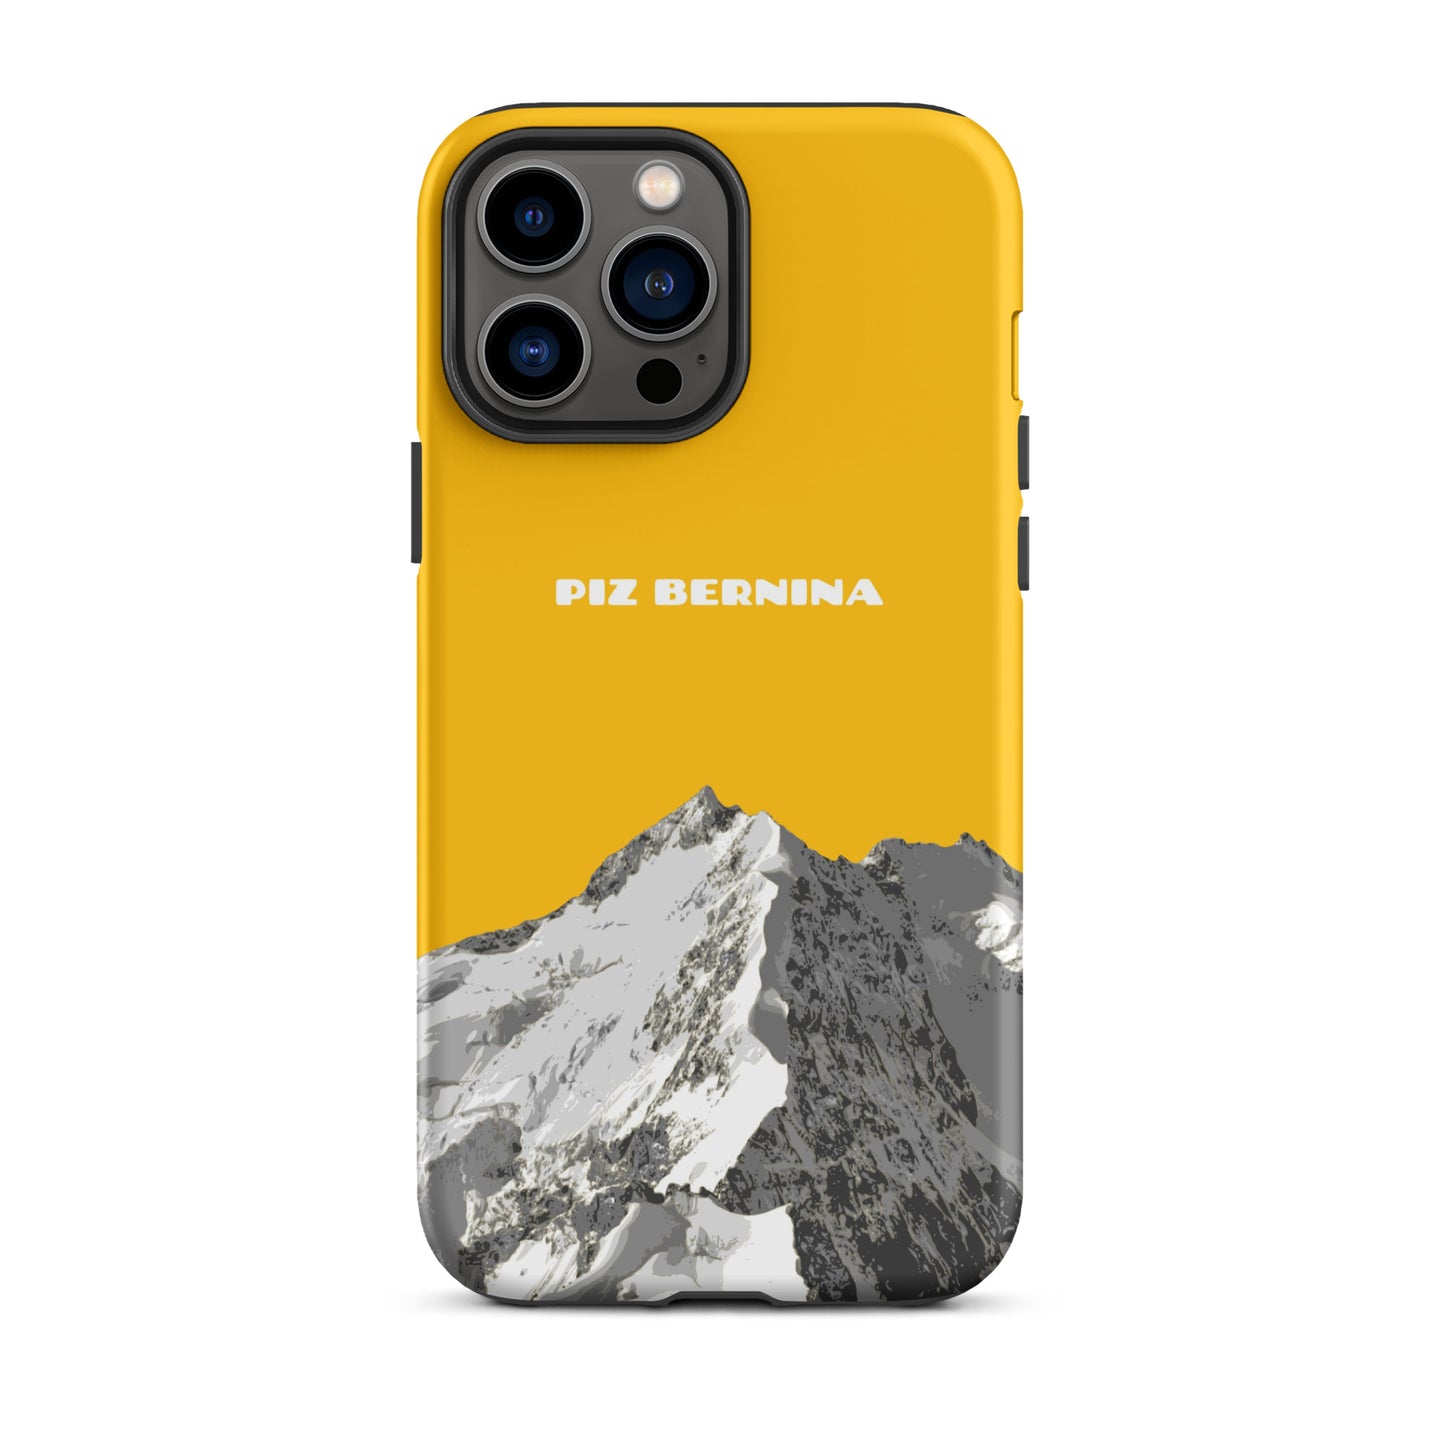 Hülle für das iPhone 13 Pro Max von Apple in der Farbe Goldgelb, dass den Piz Bernina in Graubünden zeigt.